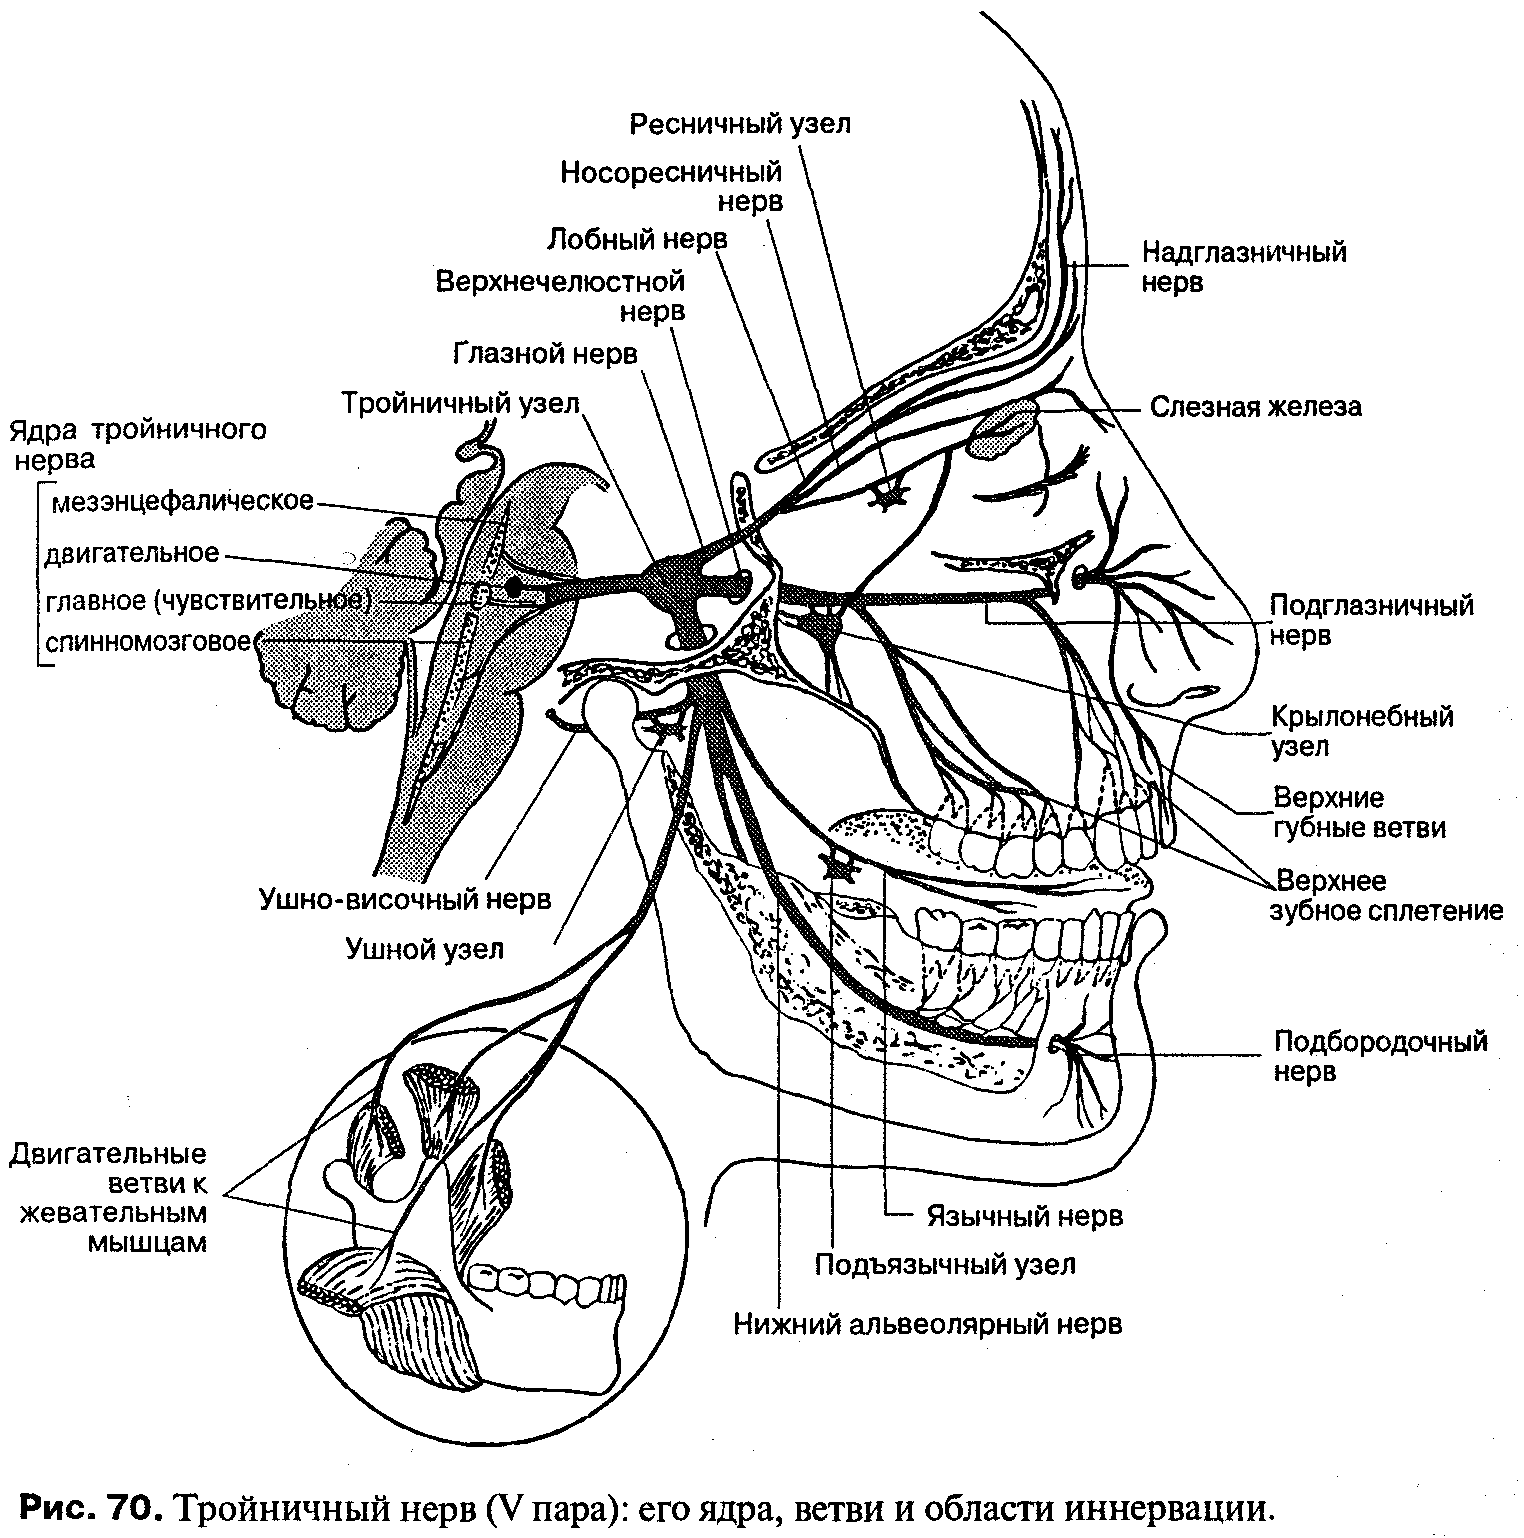 Троичный лицевой нерв. Ветви тройничного нерва анатомия. Схема проекции ветвей тройничного нерва. Иннервация тройничного нерва схема. Узлы тройничного нерва анатомия.